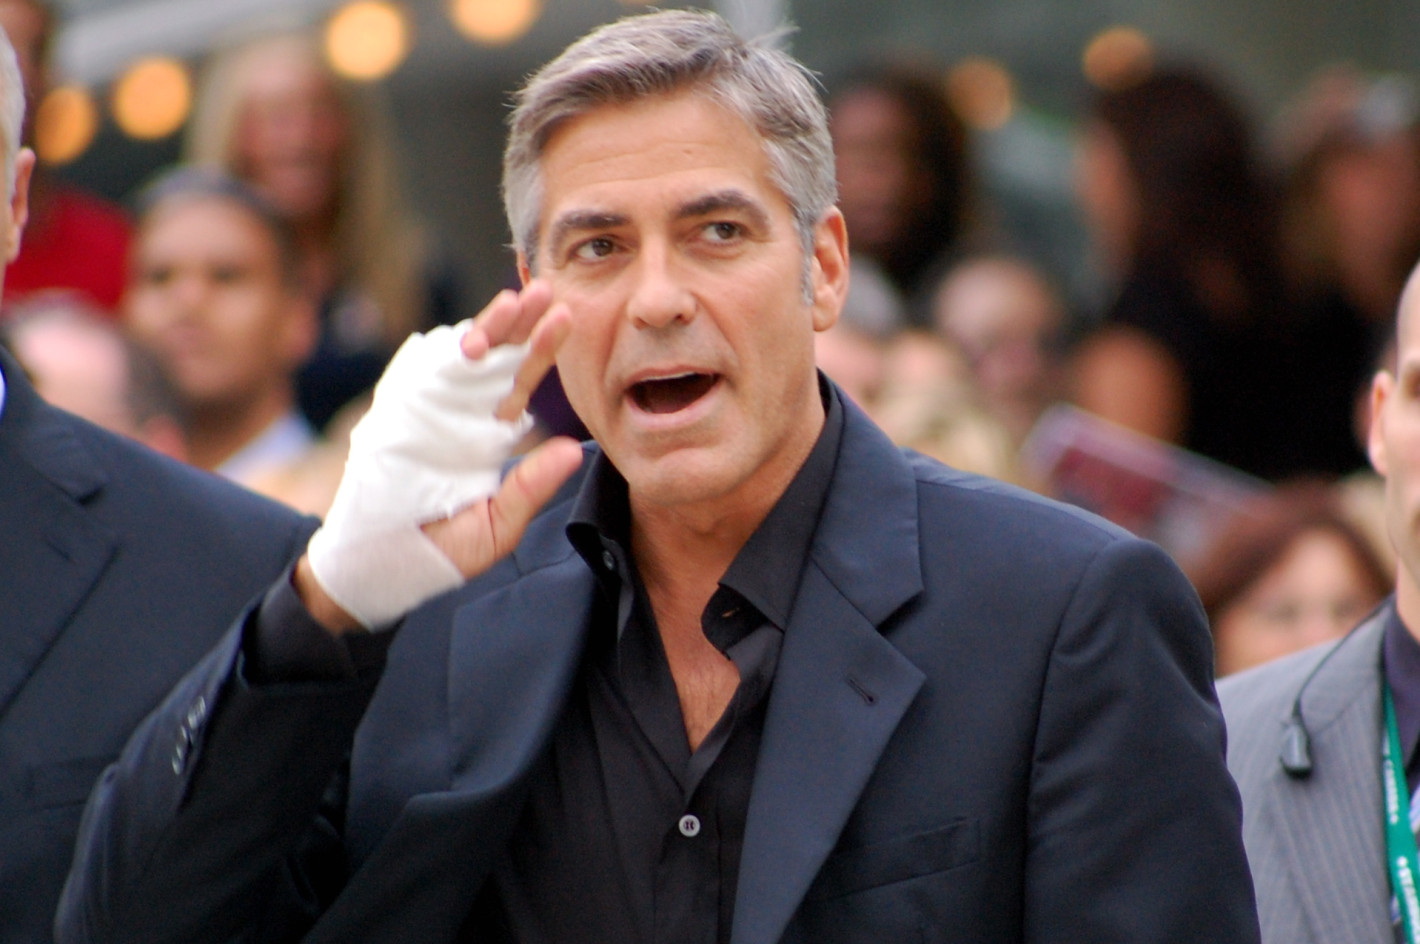 Джордж Клуни не е нарушил закона при инцидента (Още новини за катастрофата)